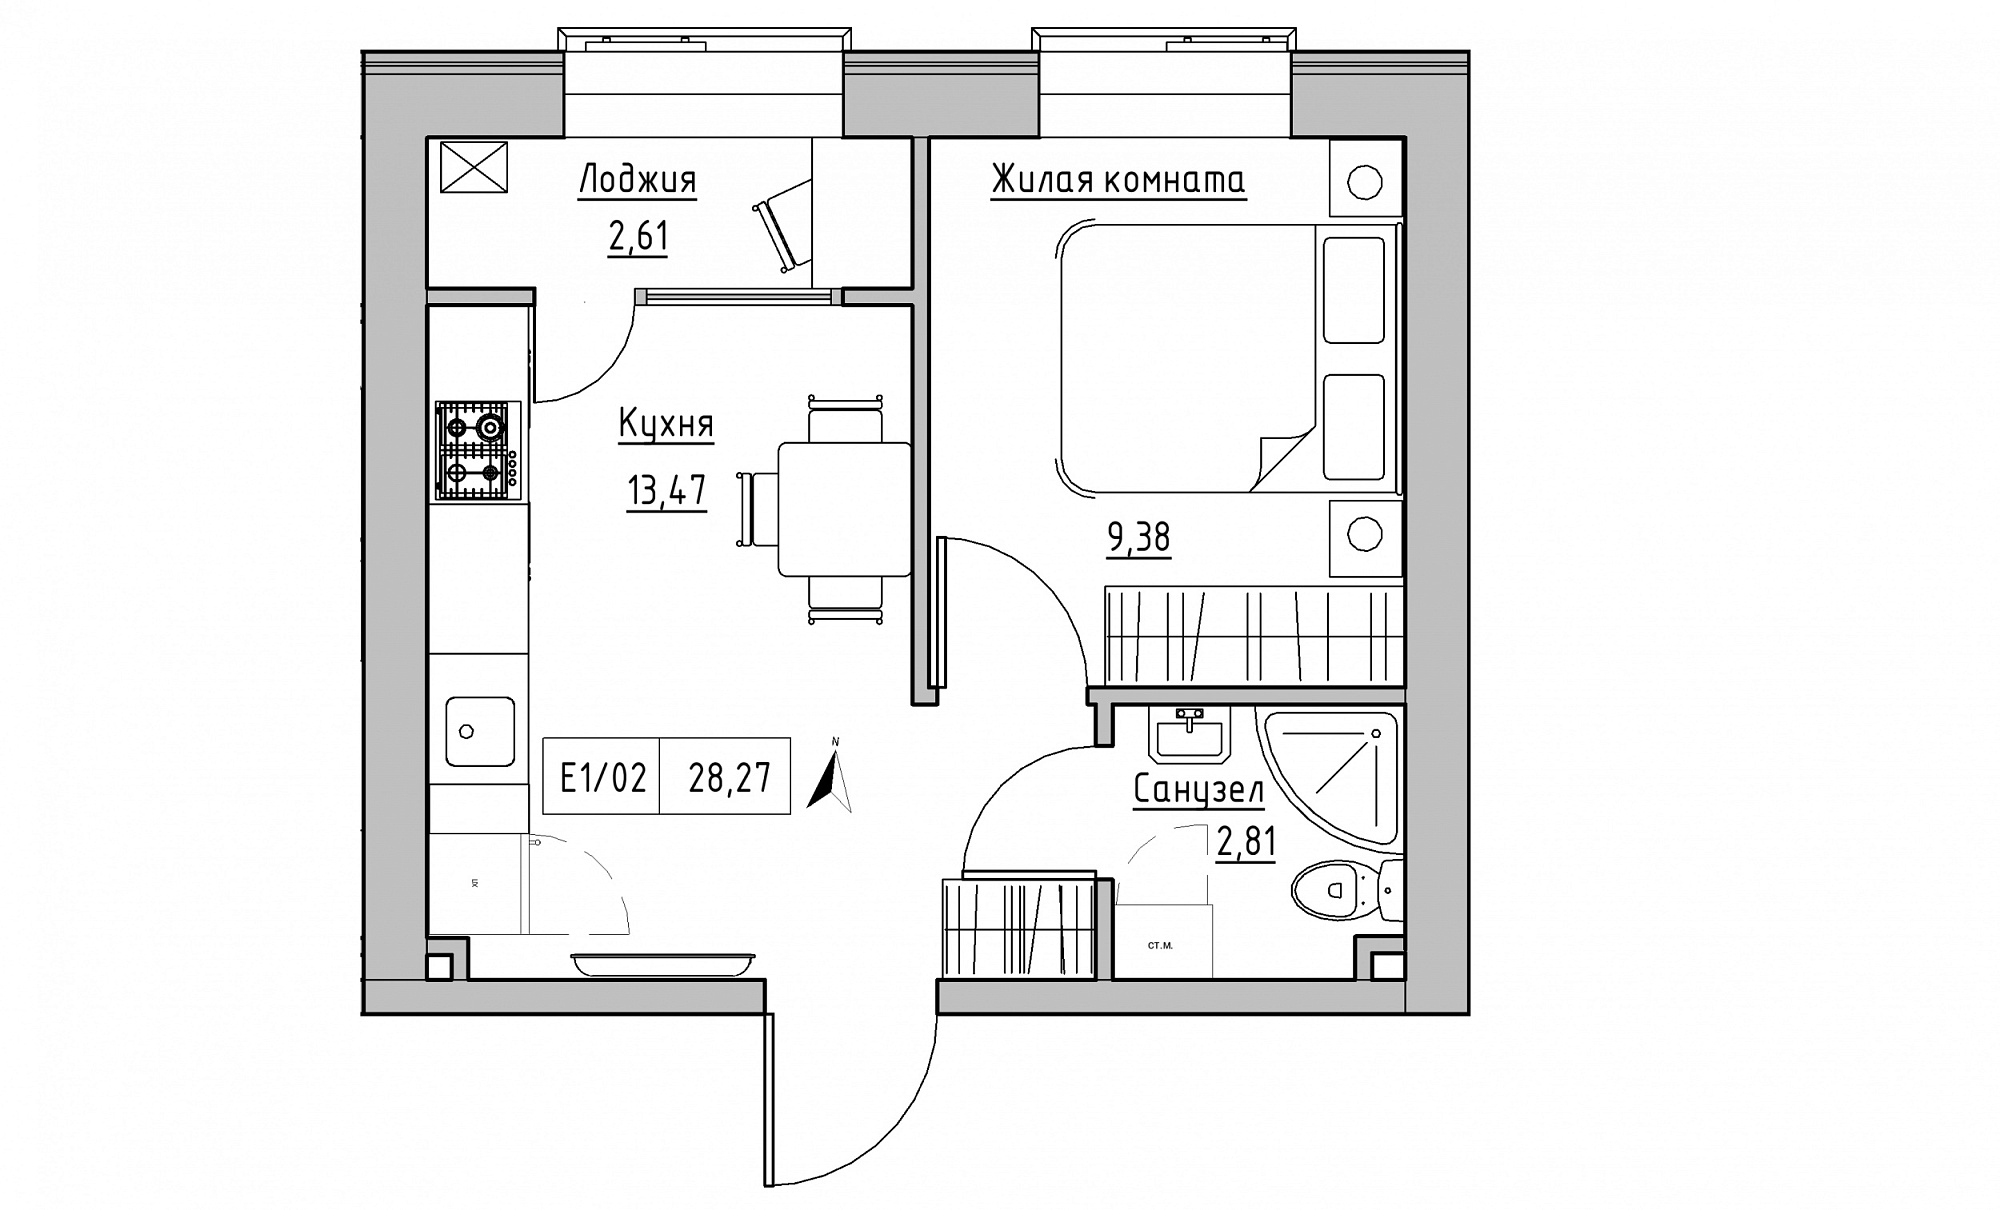 Планування 1-к квартира площею 28.27м2, KS-015-01/0015.